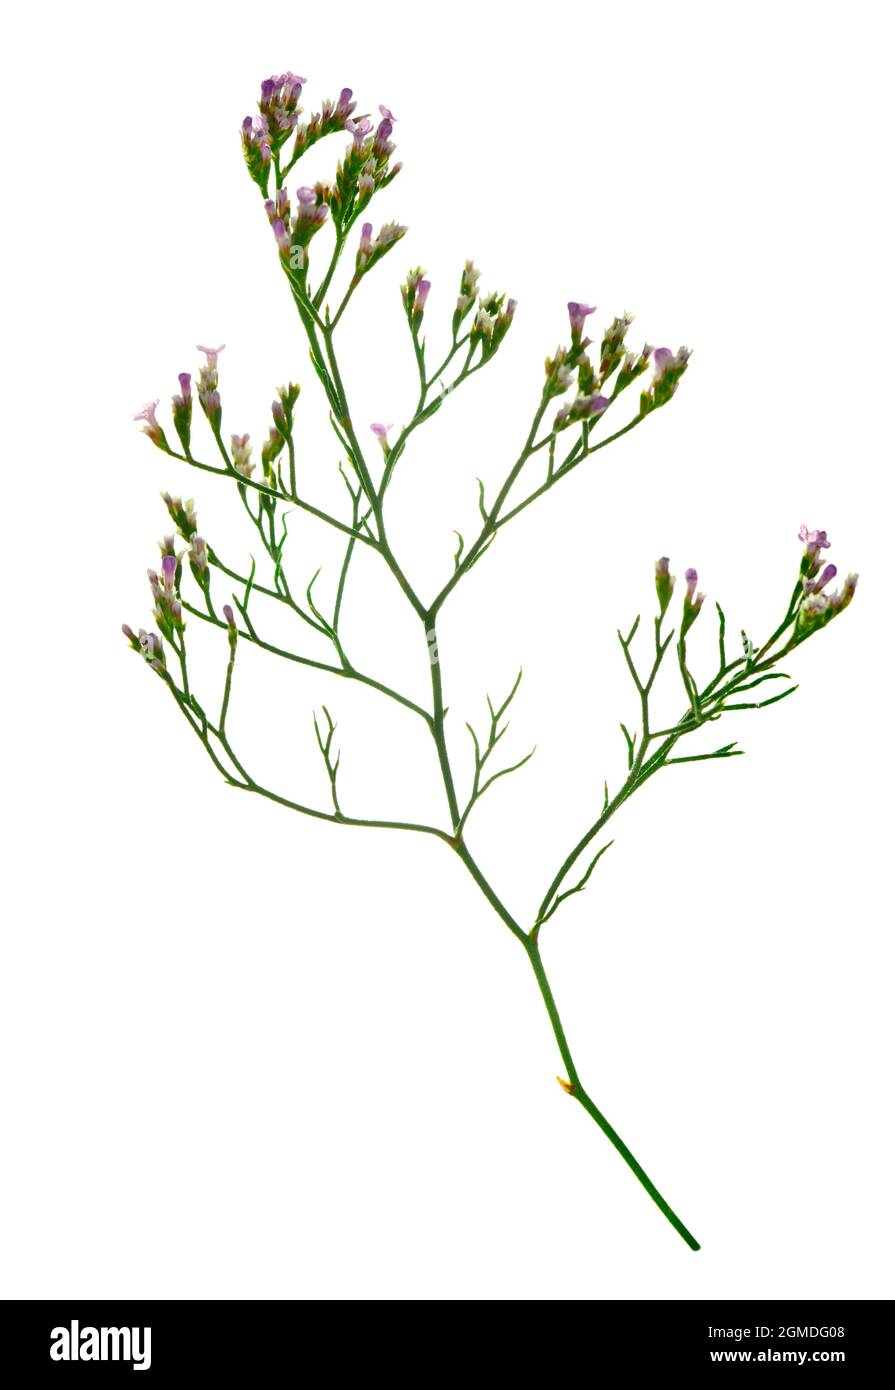 Matted Sea-lavender - Limonium bellidifolium Stock Photo